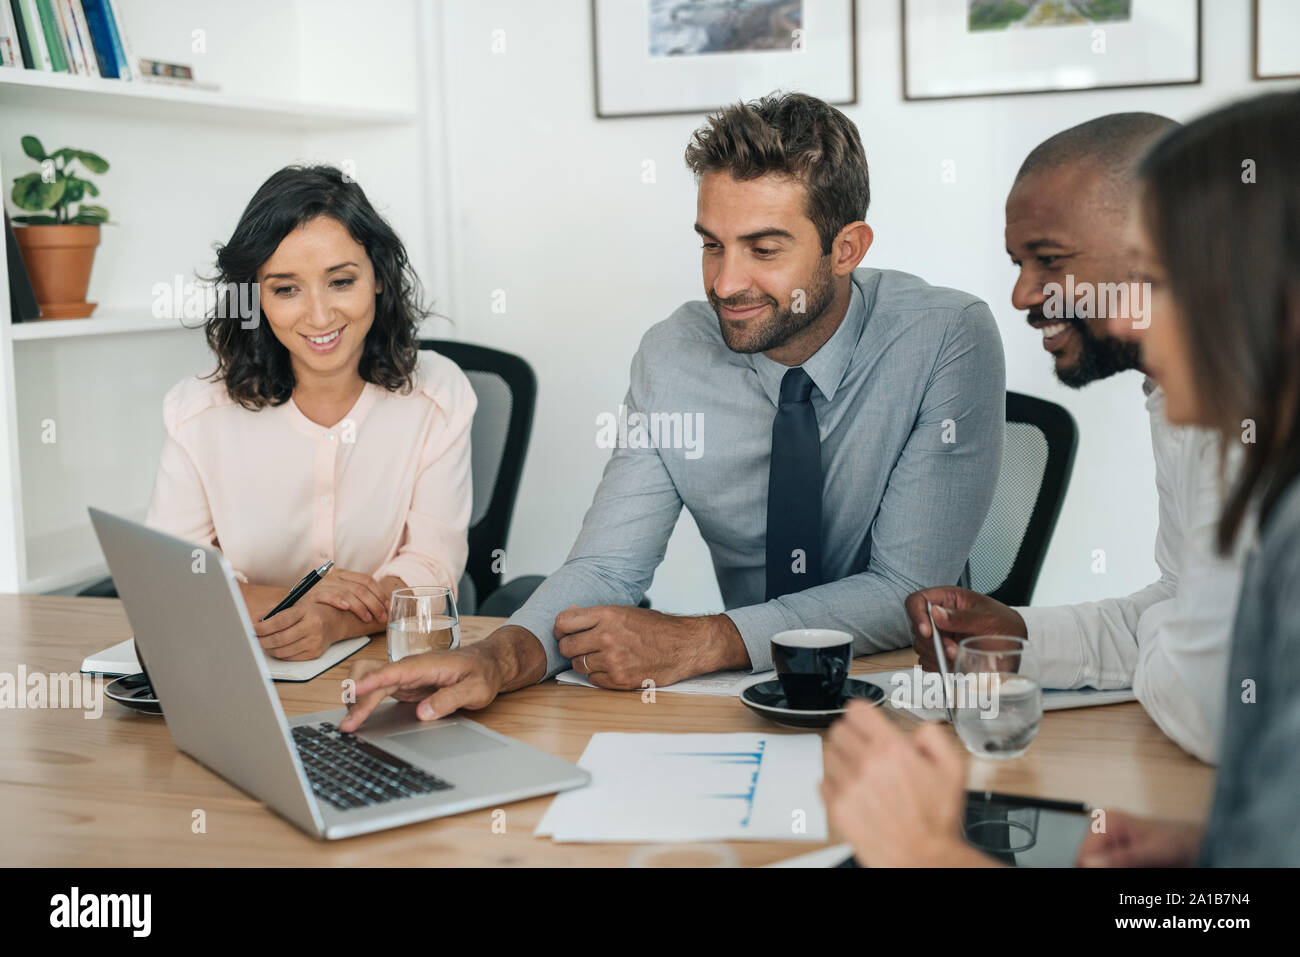 Lächelnd Geschäftsleute auf einem Laptop arbeiten zusammen in einem Büro Stockfoto